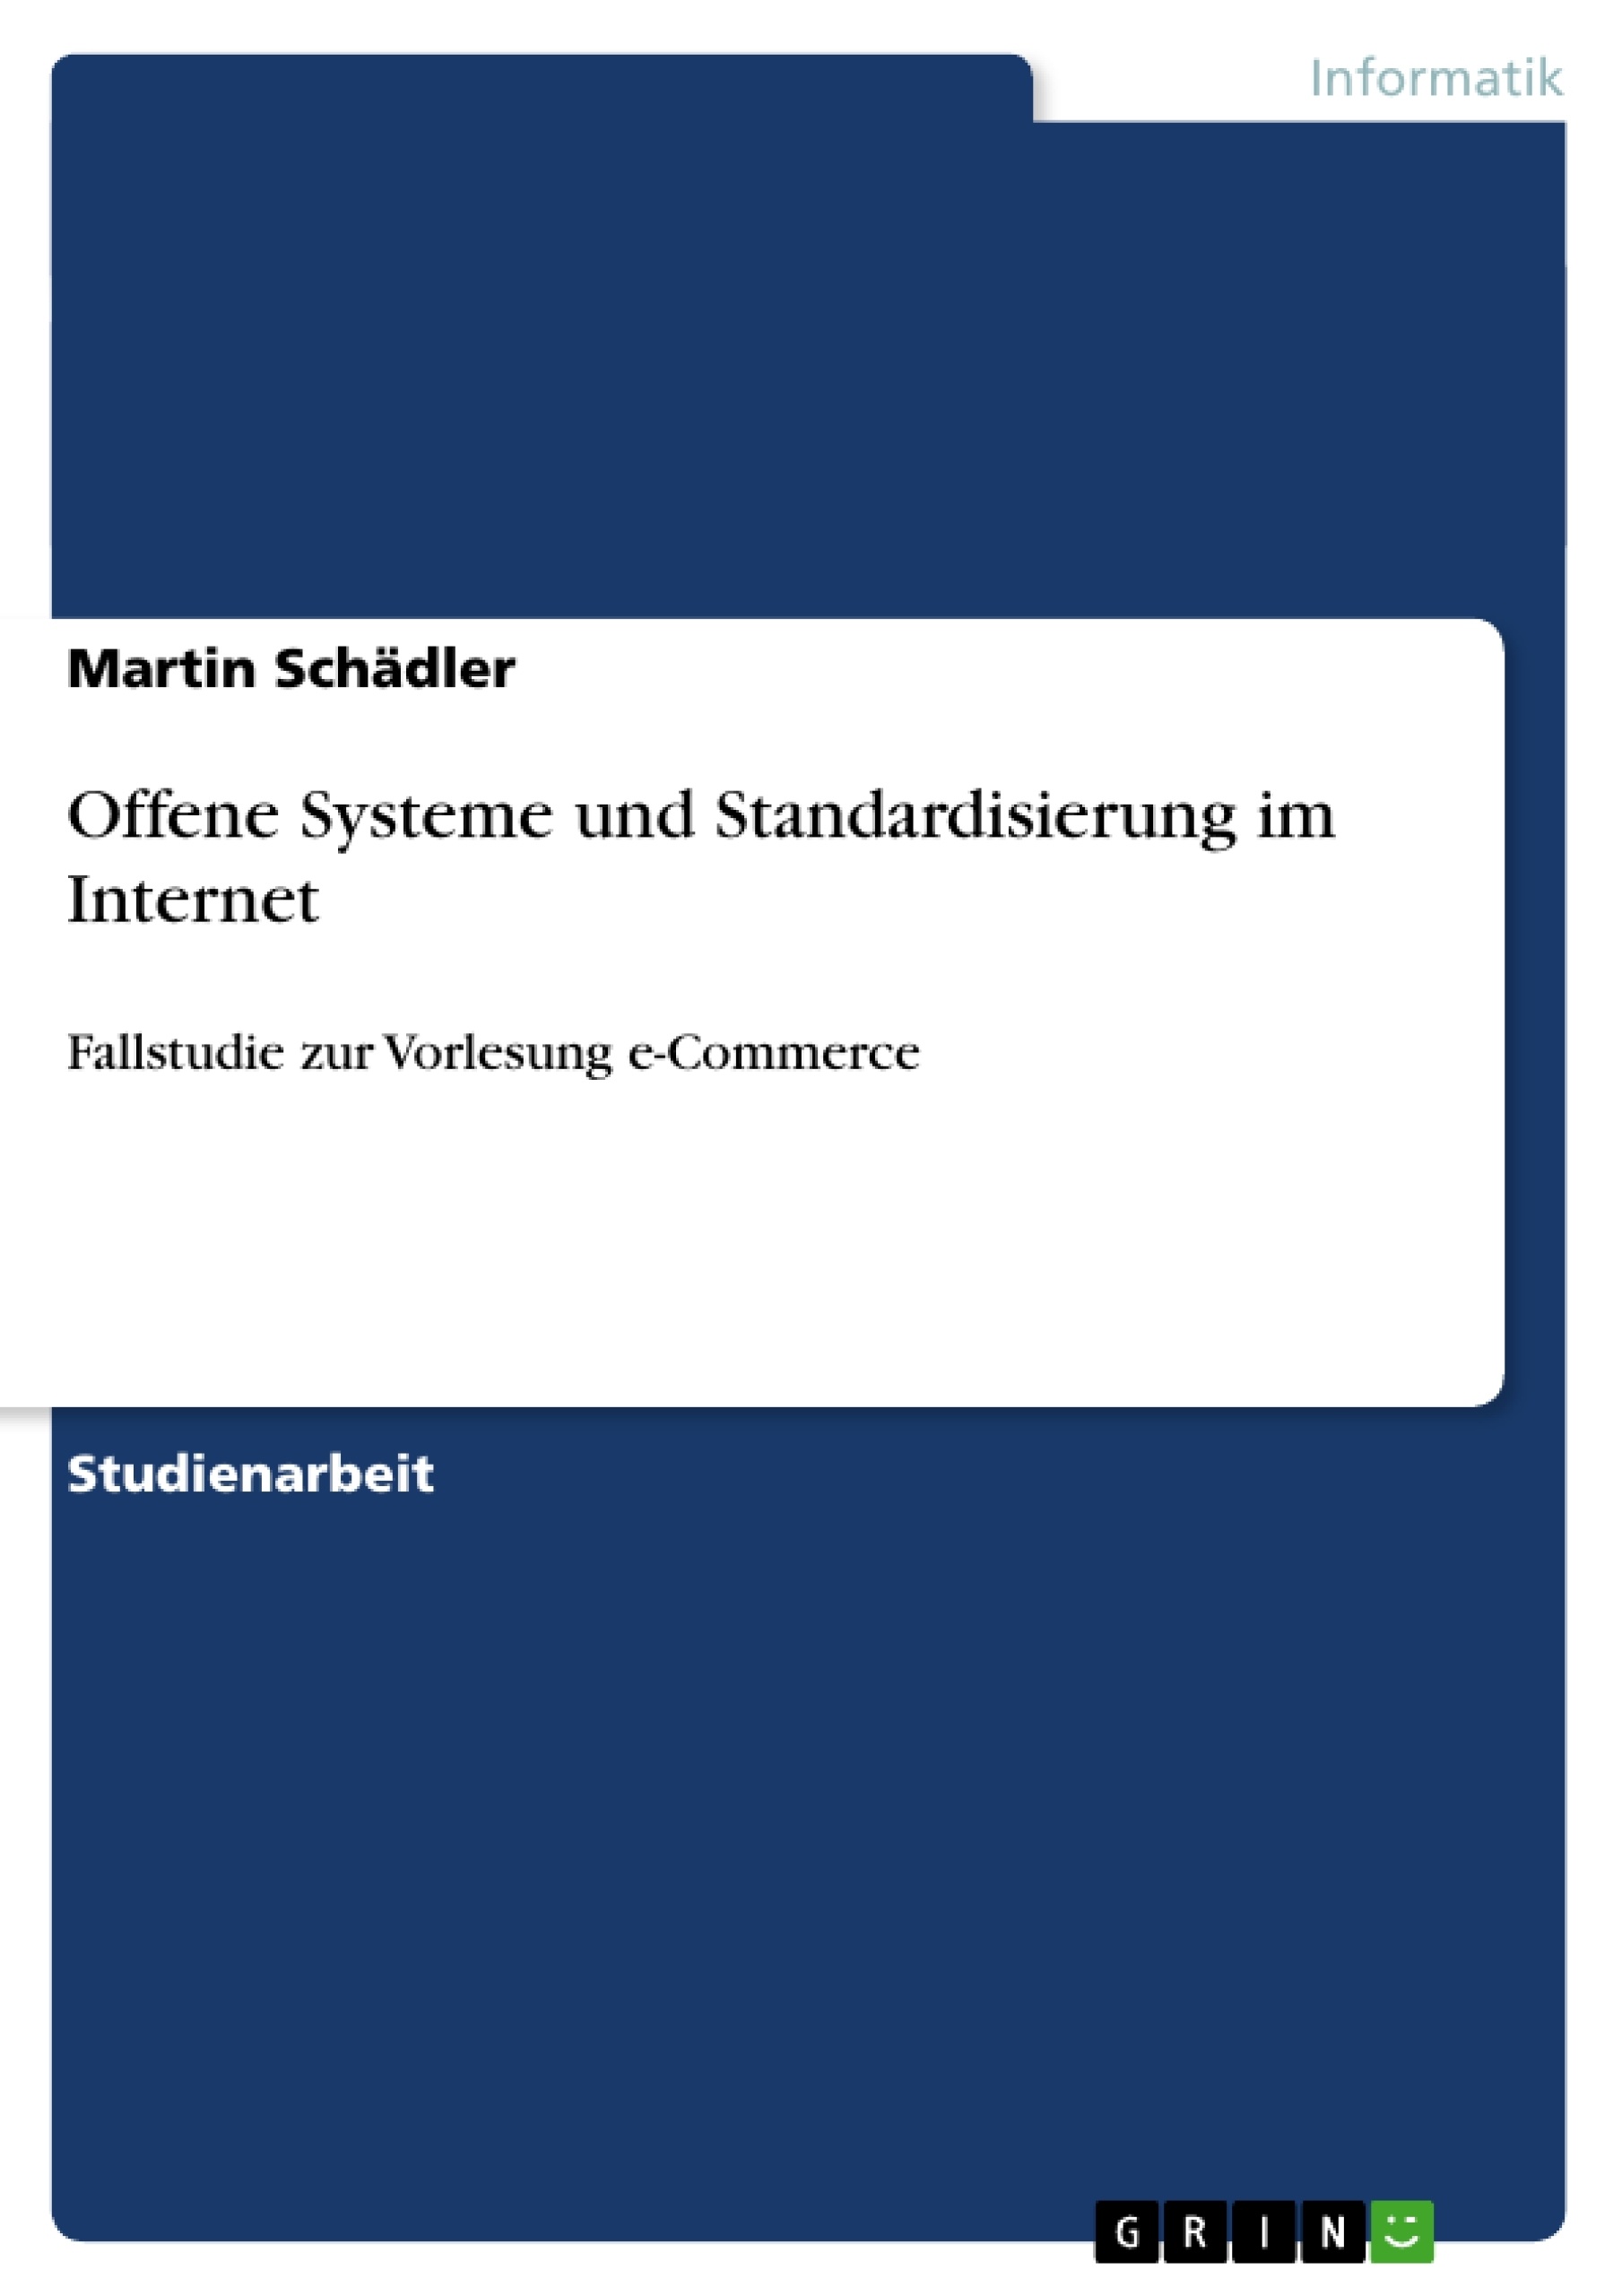 Title: Offene Systeme und Standardisierung im Internet